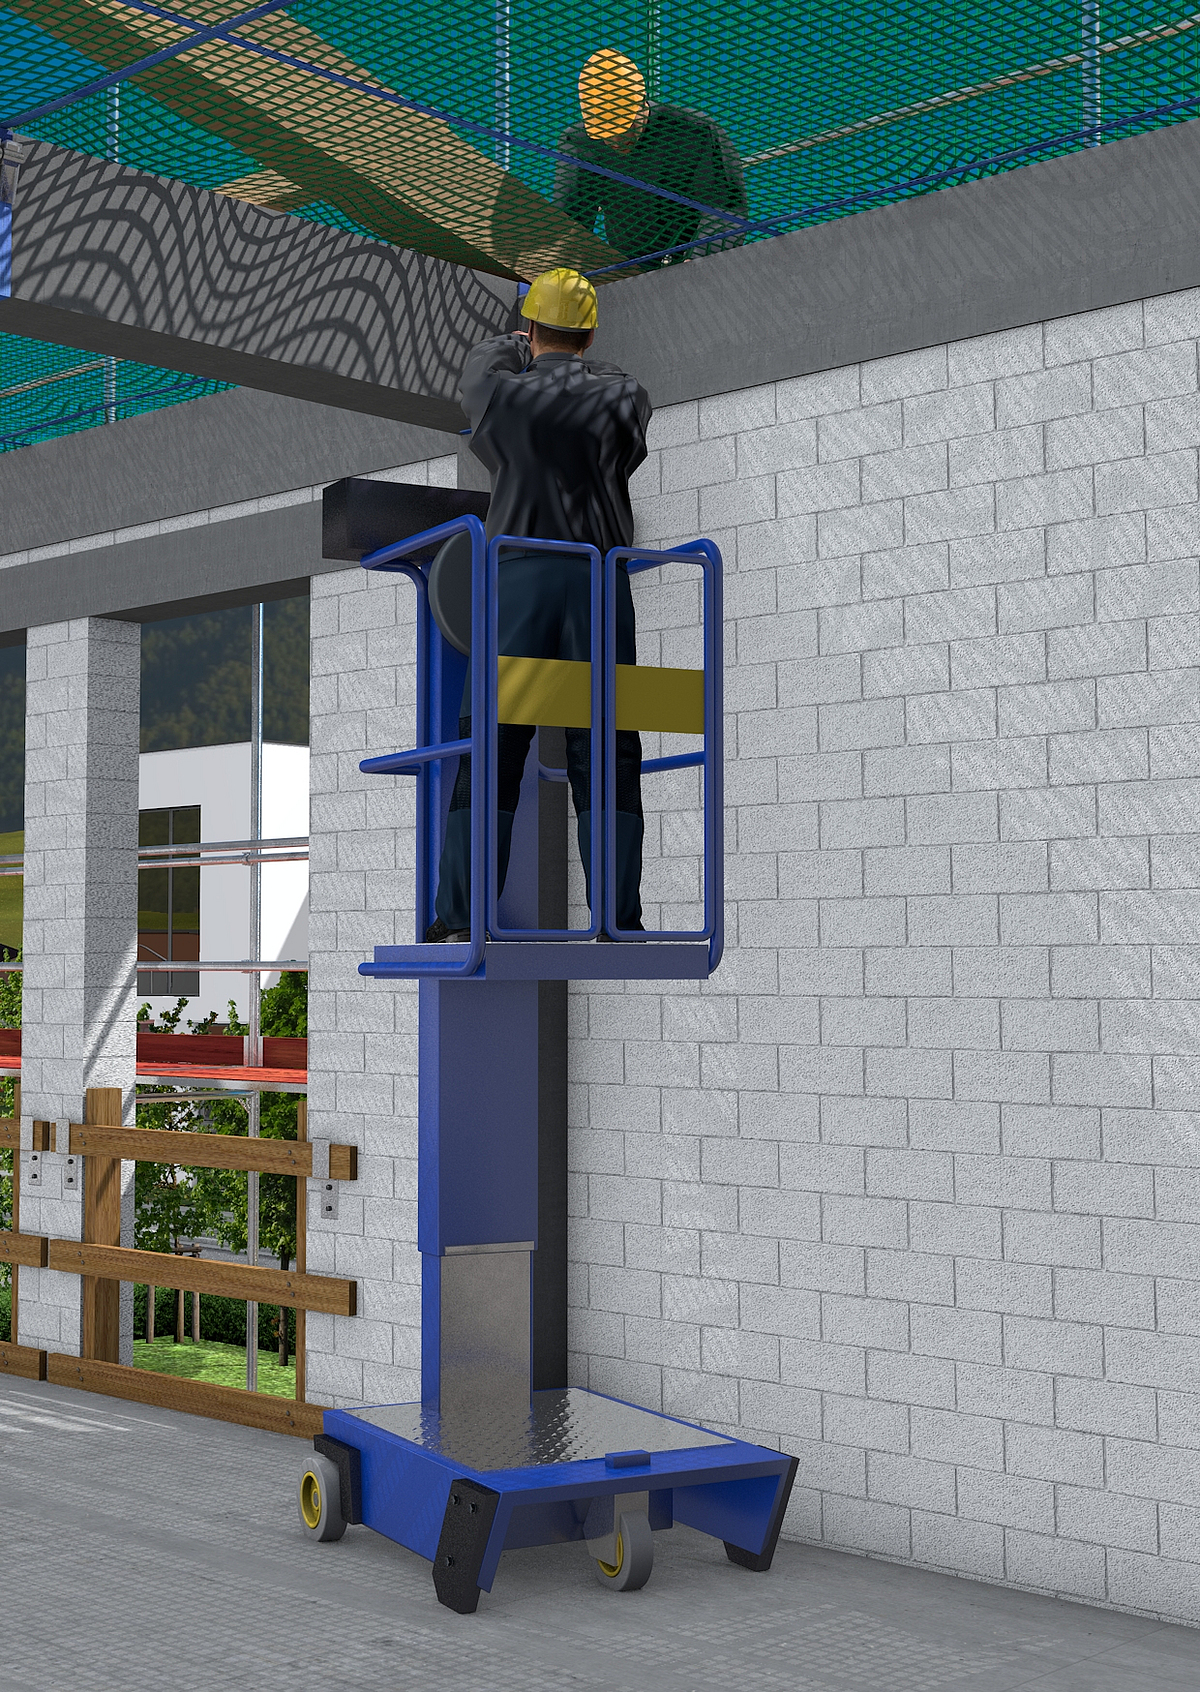 Ein Bauarbeiter bei Arbeit auf einer Kleinsthubarbeitsbühne.